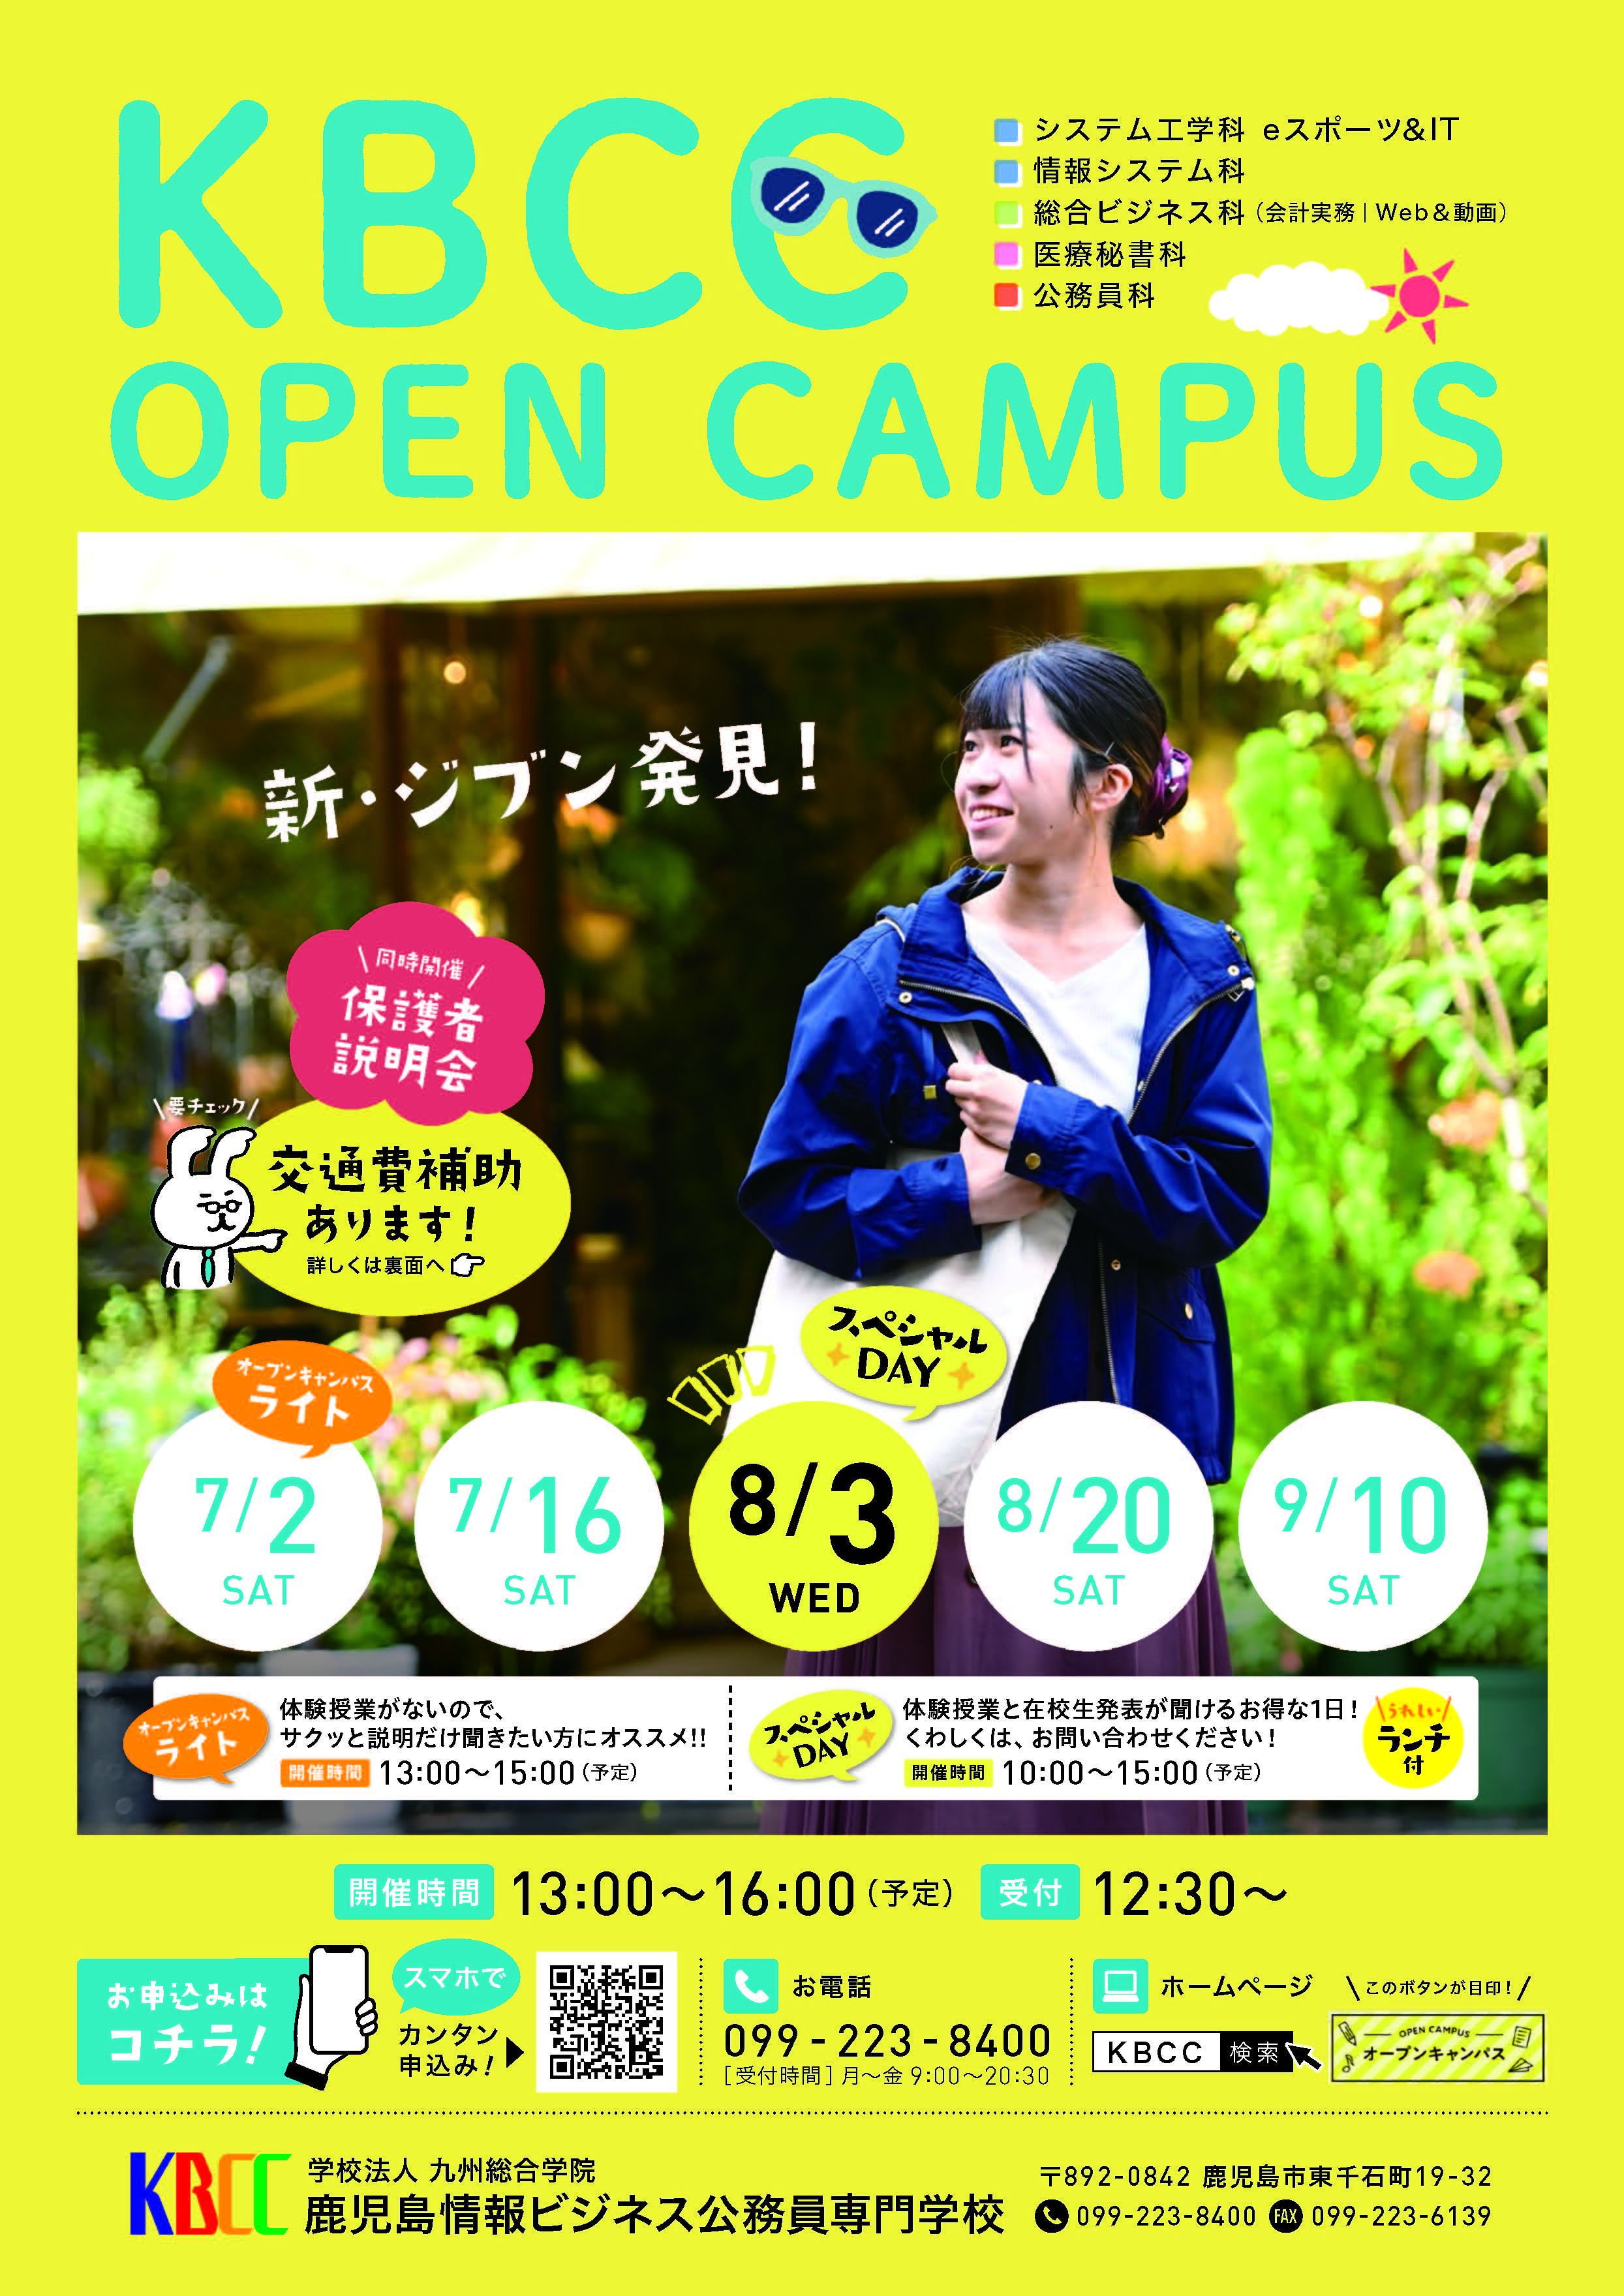 ★オープンキャンパス日程★